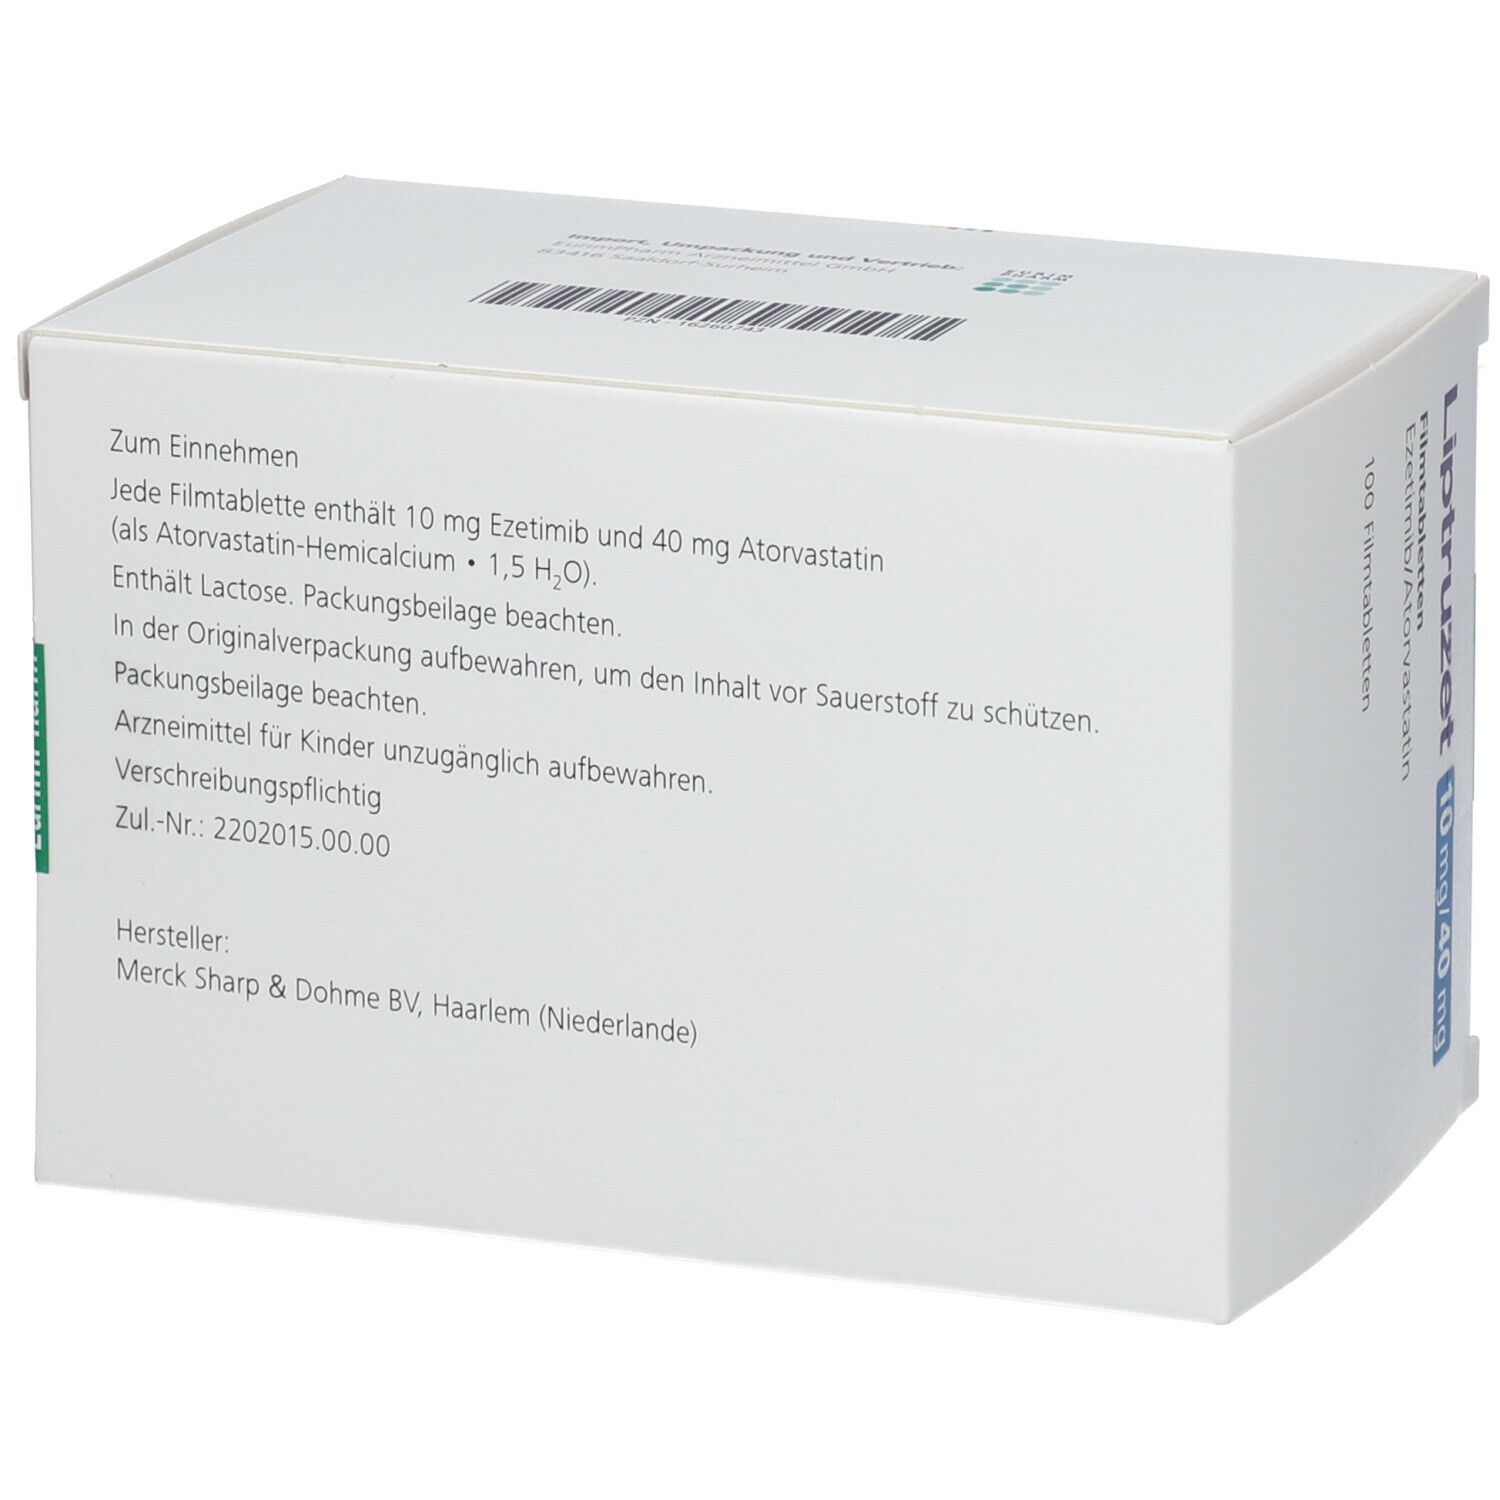 Liptruzet 10 mg/40 mg